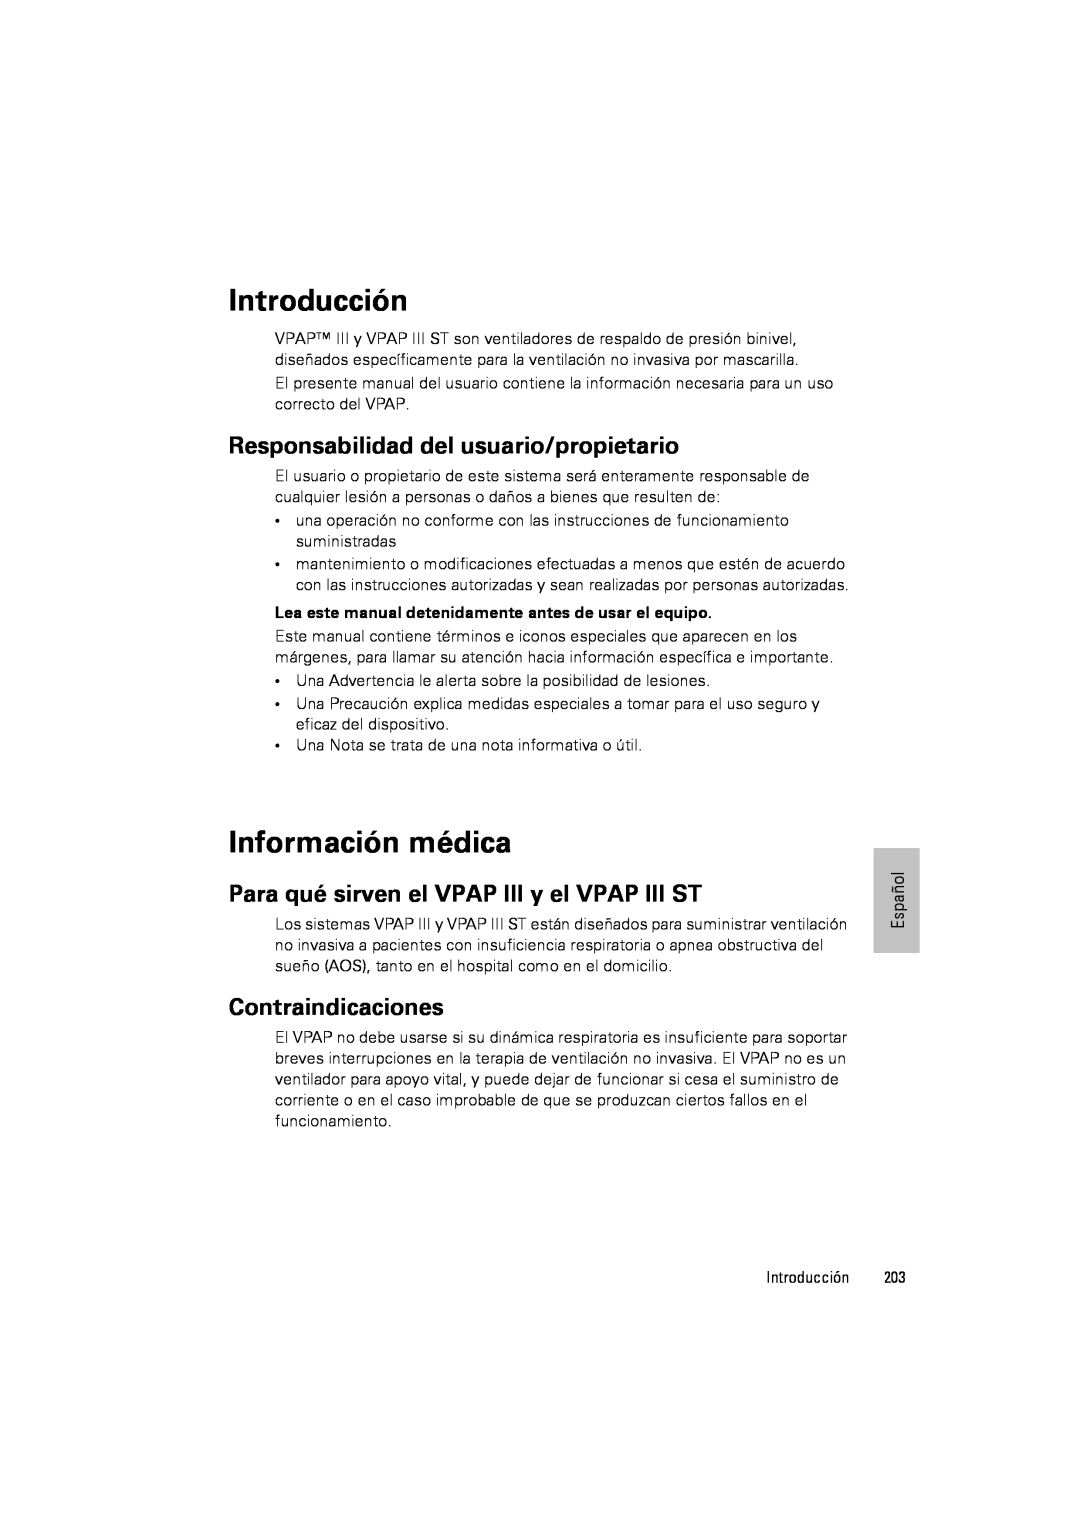 ResMed III & III ST Introducción, Información médica, Responsabilidad del usuario/propietario, Contraindicaciones 